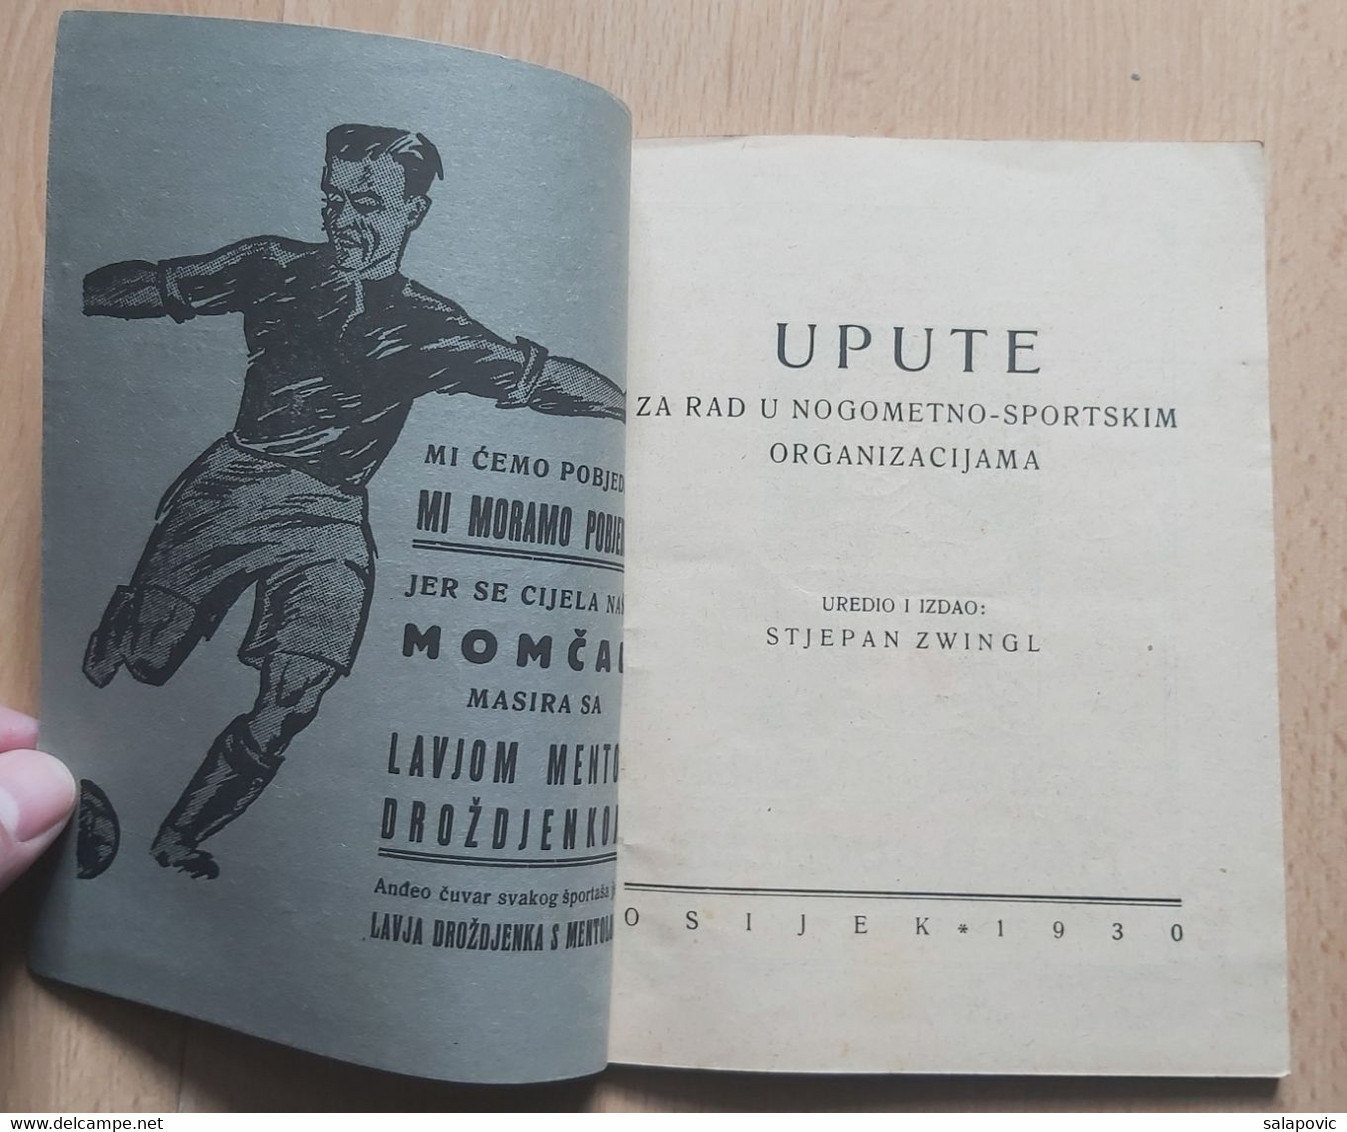 UPUTE ZA RAD U NOGOMETNO - SPORTSKIM OTGANIZACIJAMA OSIJEK 1930 STJEPAN ZWINGL YUGOSLAV FOOTBALL FEDERATION - Bücher